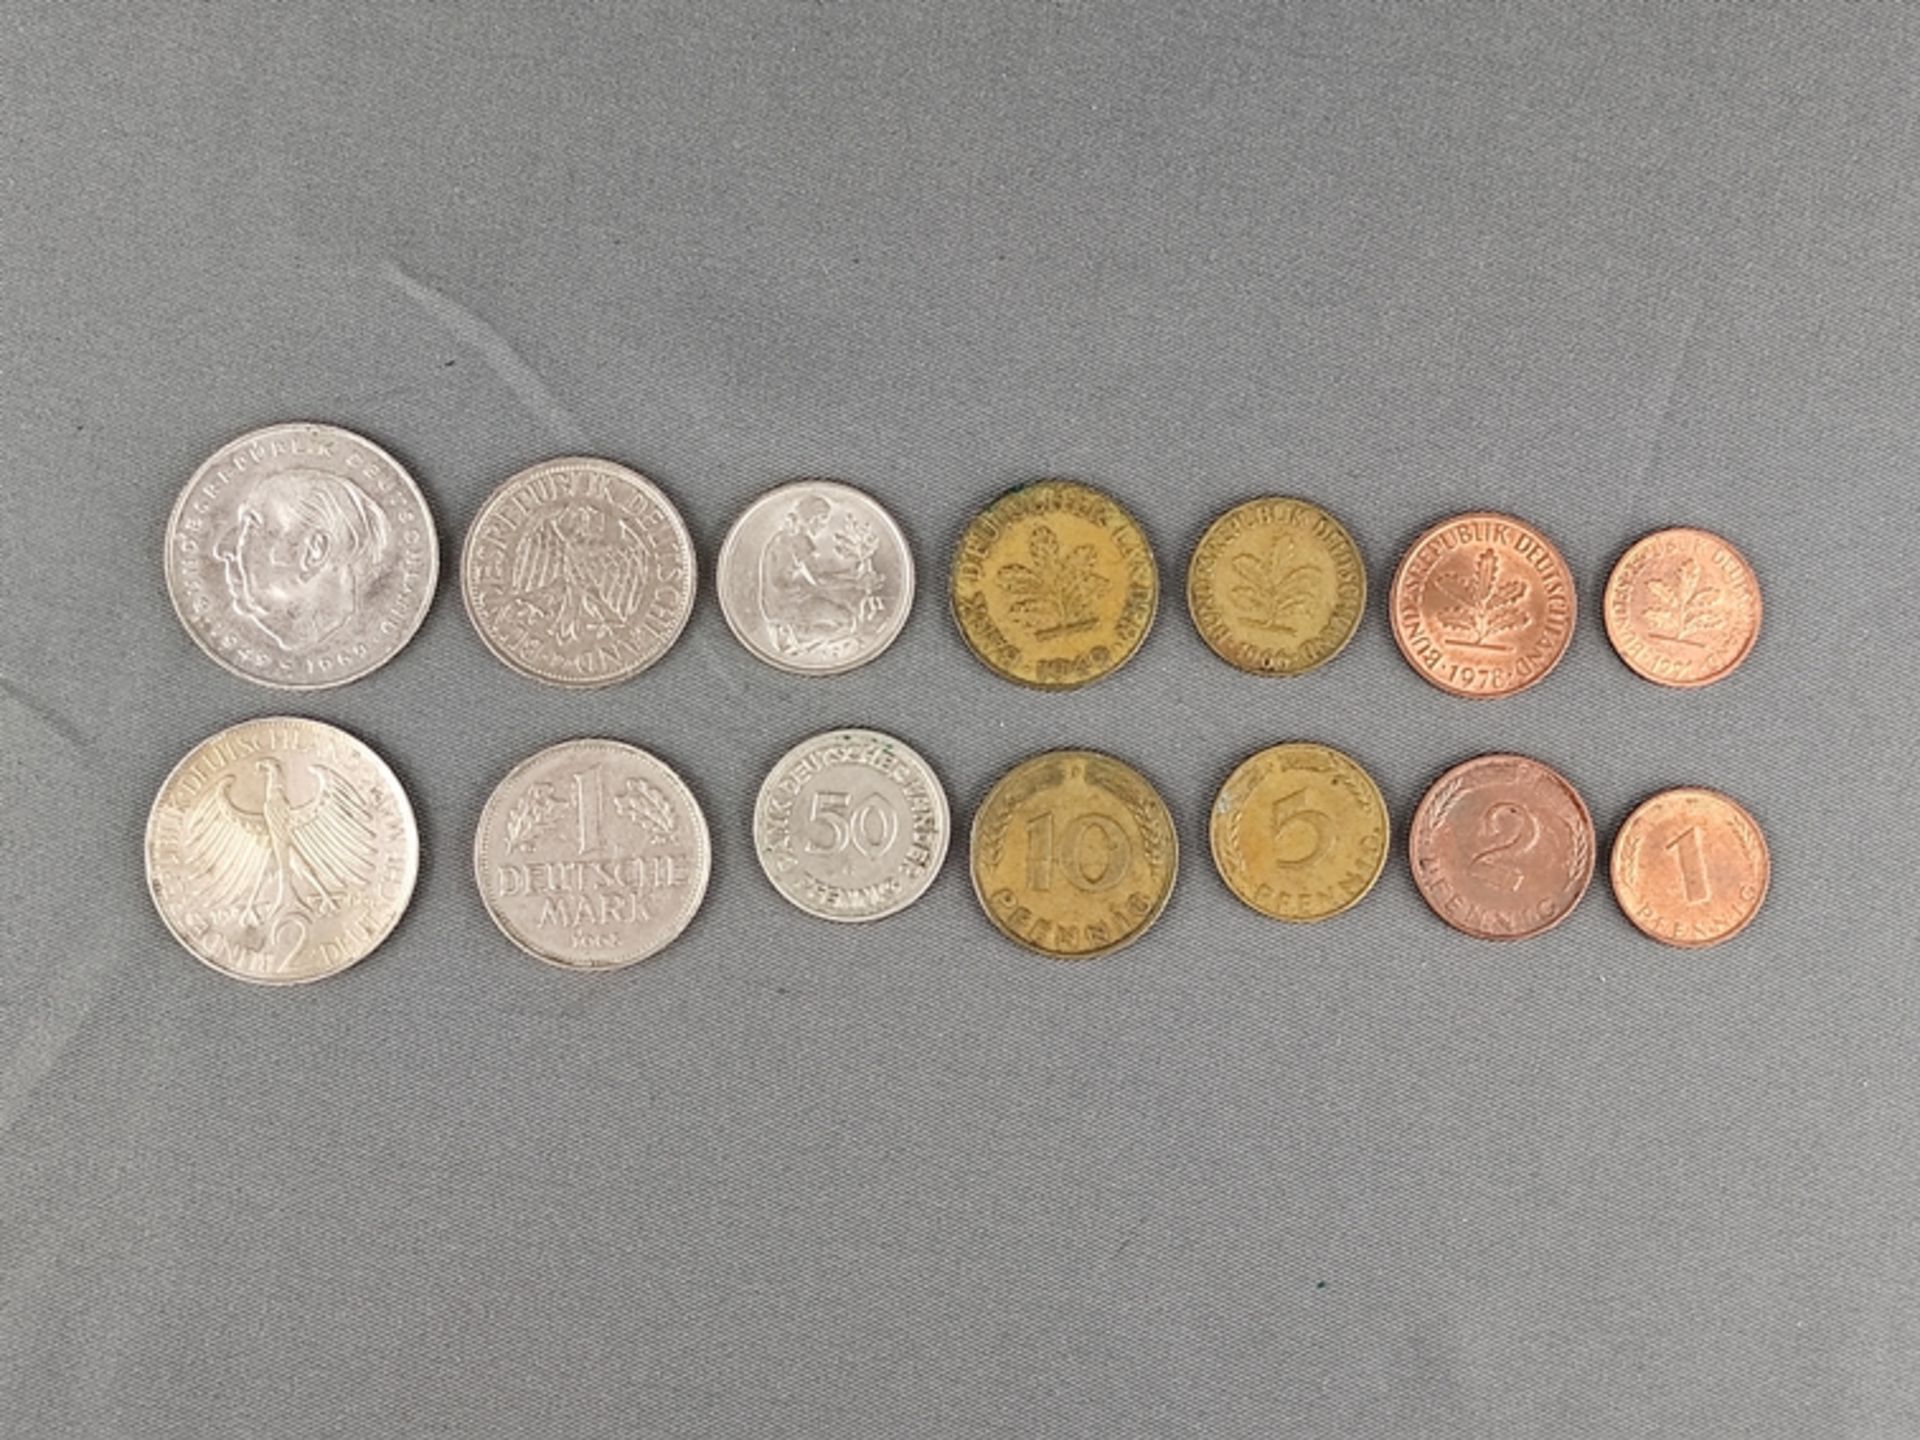 Großes Konvolut Deutsche Mark Münzen, 128 Münzen, 10x1 Mark, 5x2Mark, 29x50 Pfennig (davon 19x1949) - Bild 2 aus 2